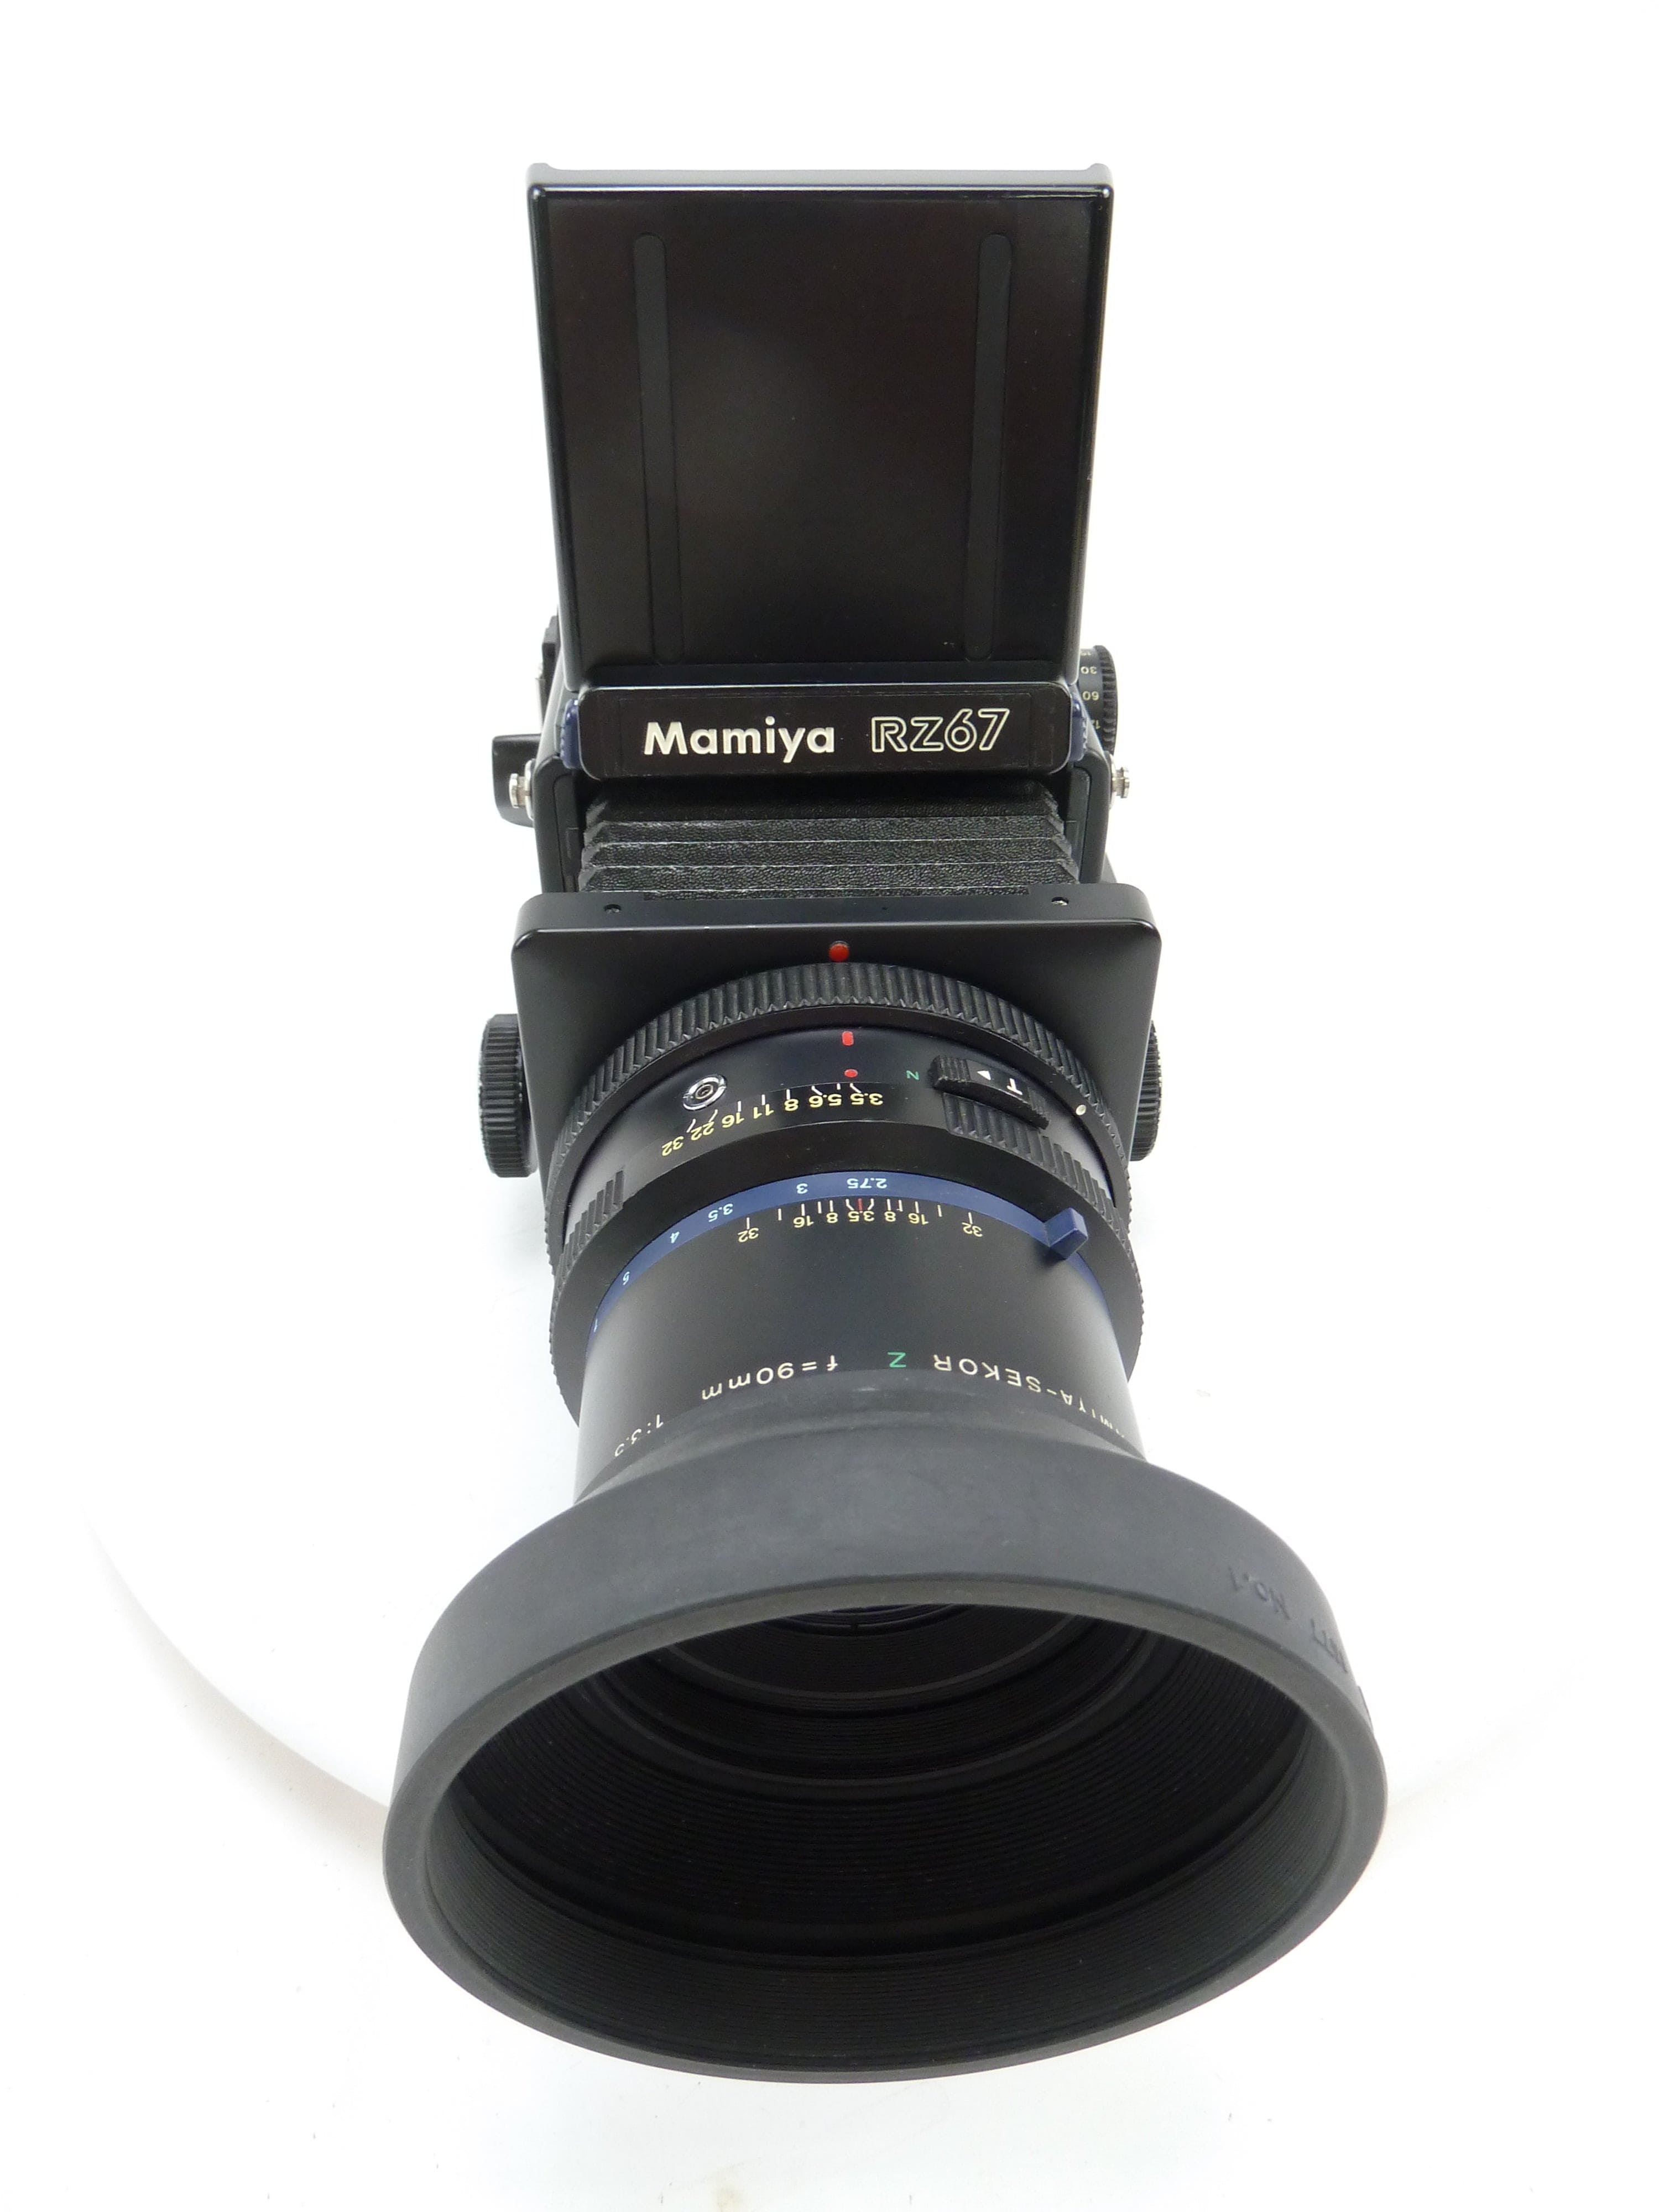 Mamiya Sekor Z 90mm f3.5 W マミヤ セコール - カメラ